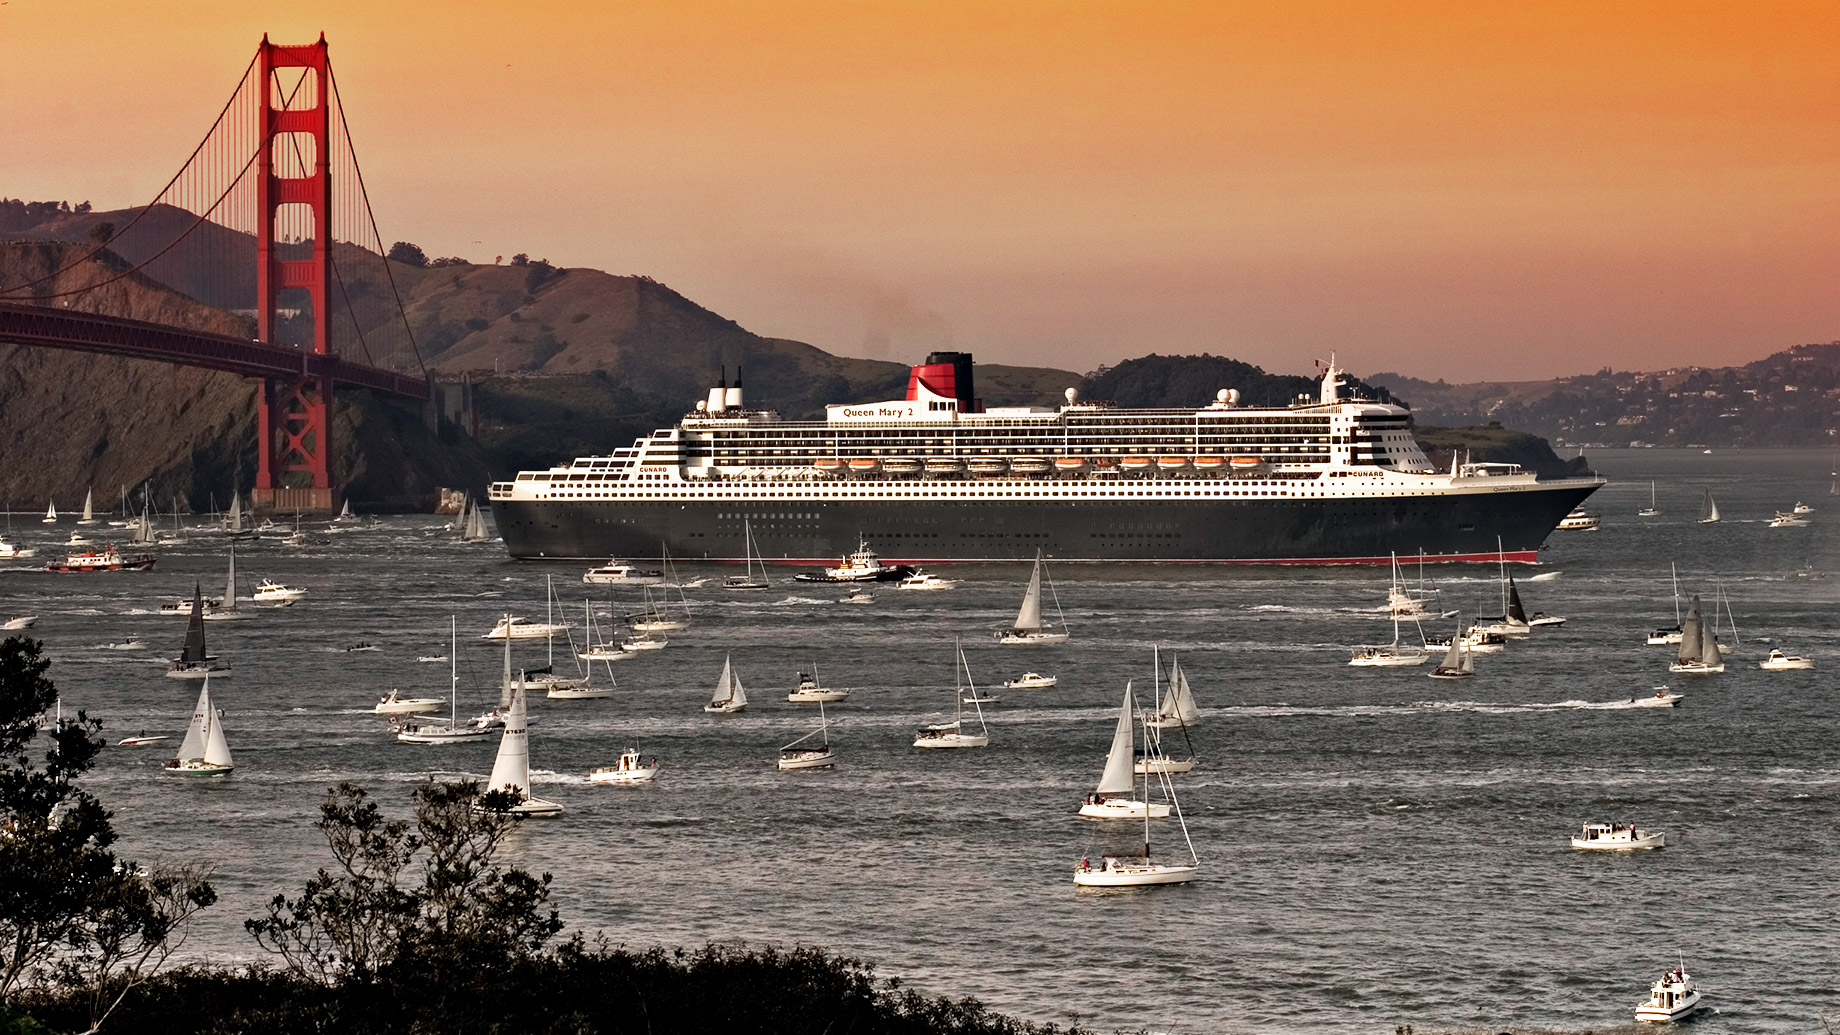 His Royal Highness - Queen Mary 2 Cruise Line - Golden Gate Bridge - San Francisco, California, USA